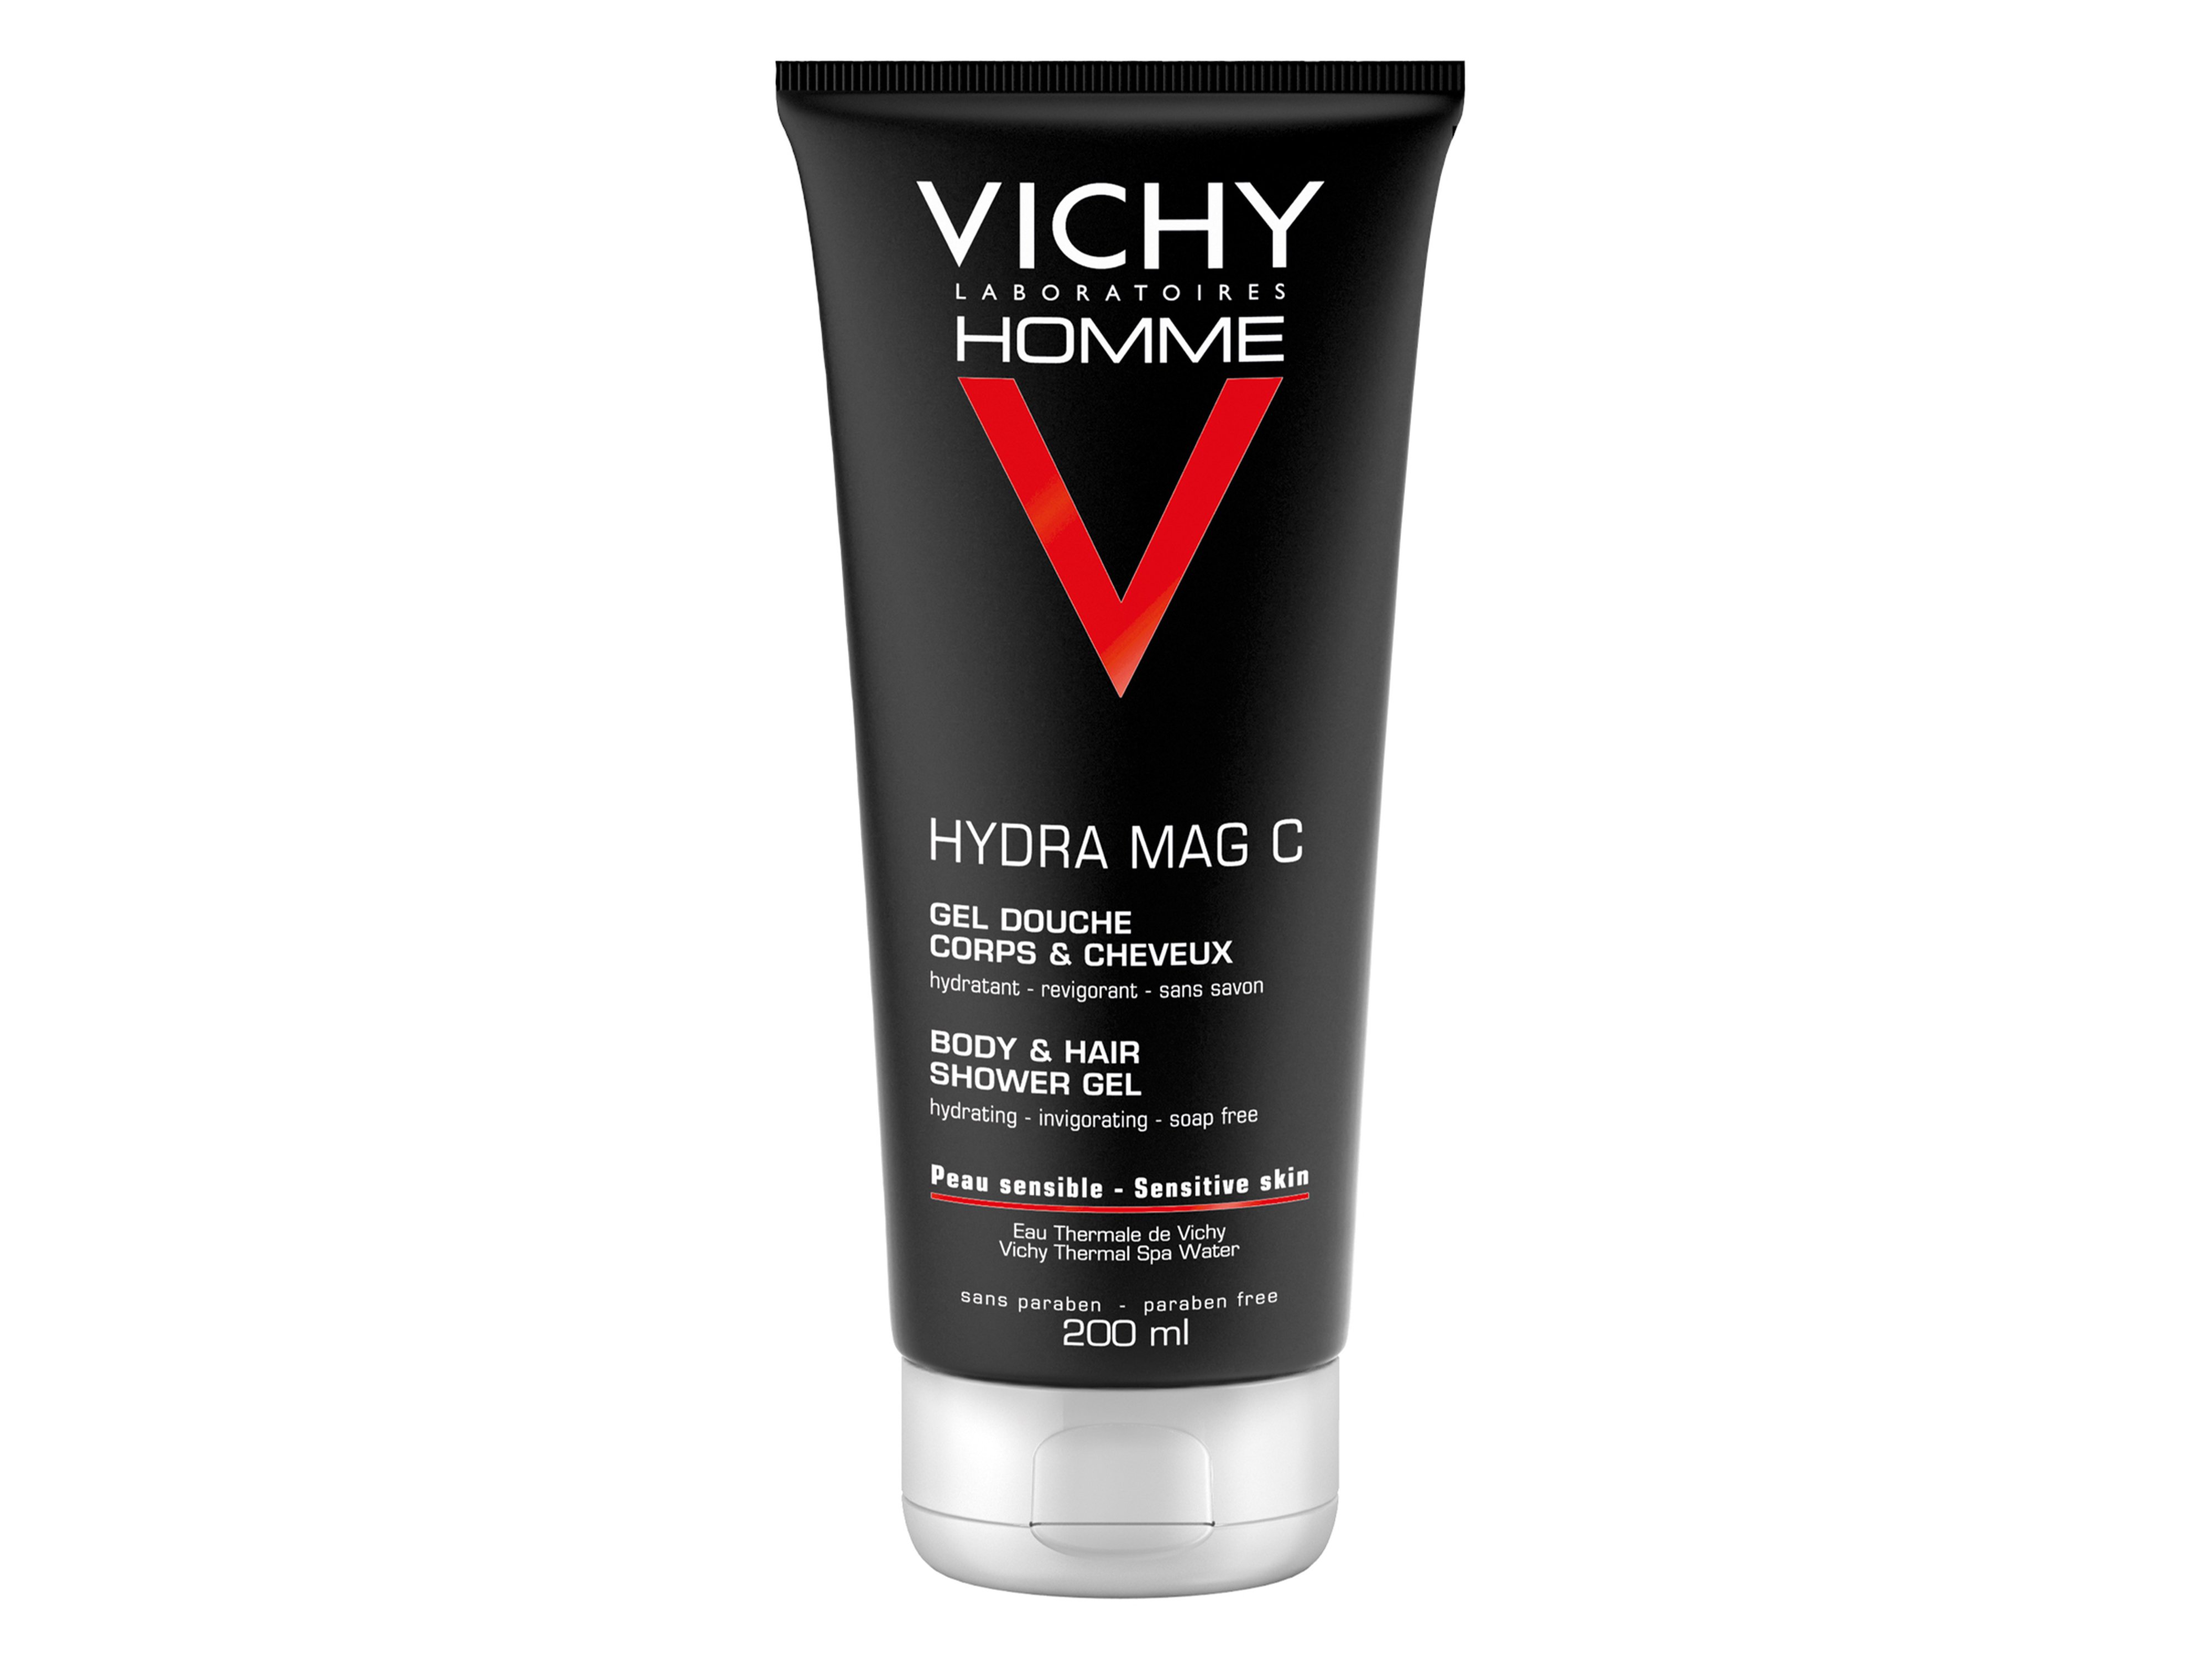 Vichy Homme Hydra Mag C Body & Hair Shower Gel, 200 ml